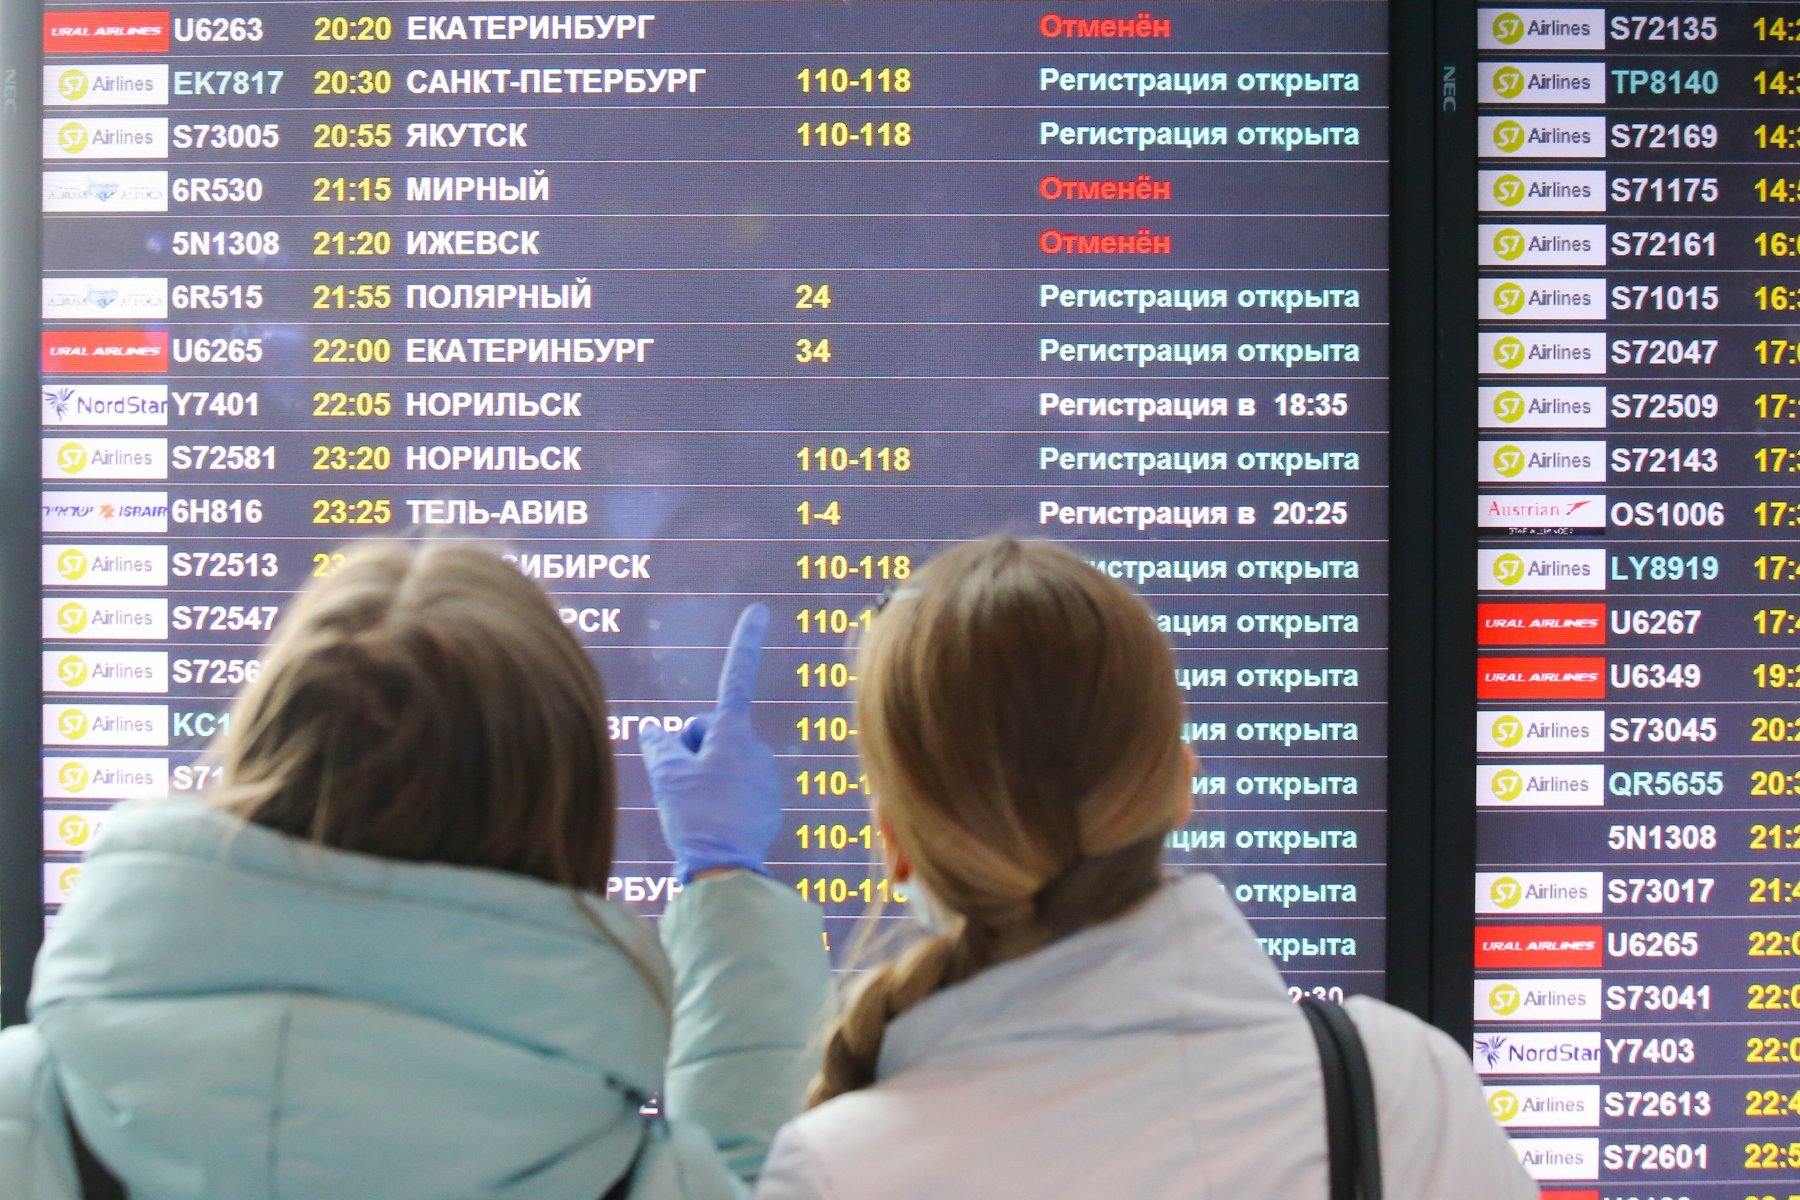 В аэропорту Домодедово 15 ноября можно бесплатно проверить уровень сахара в крови